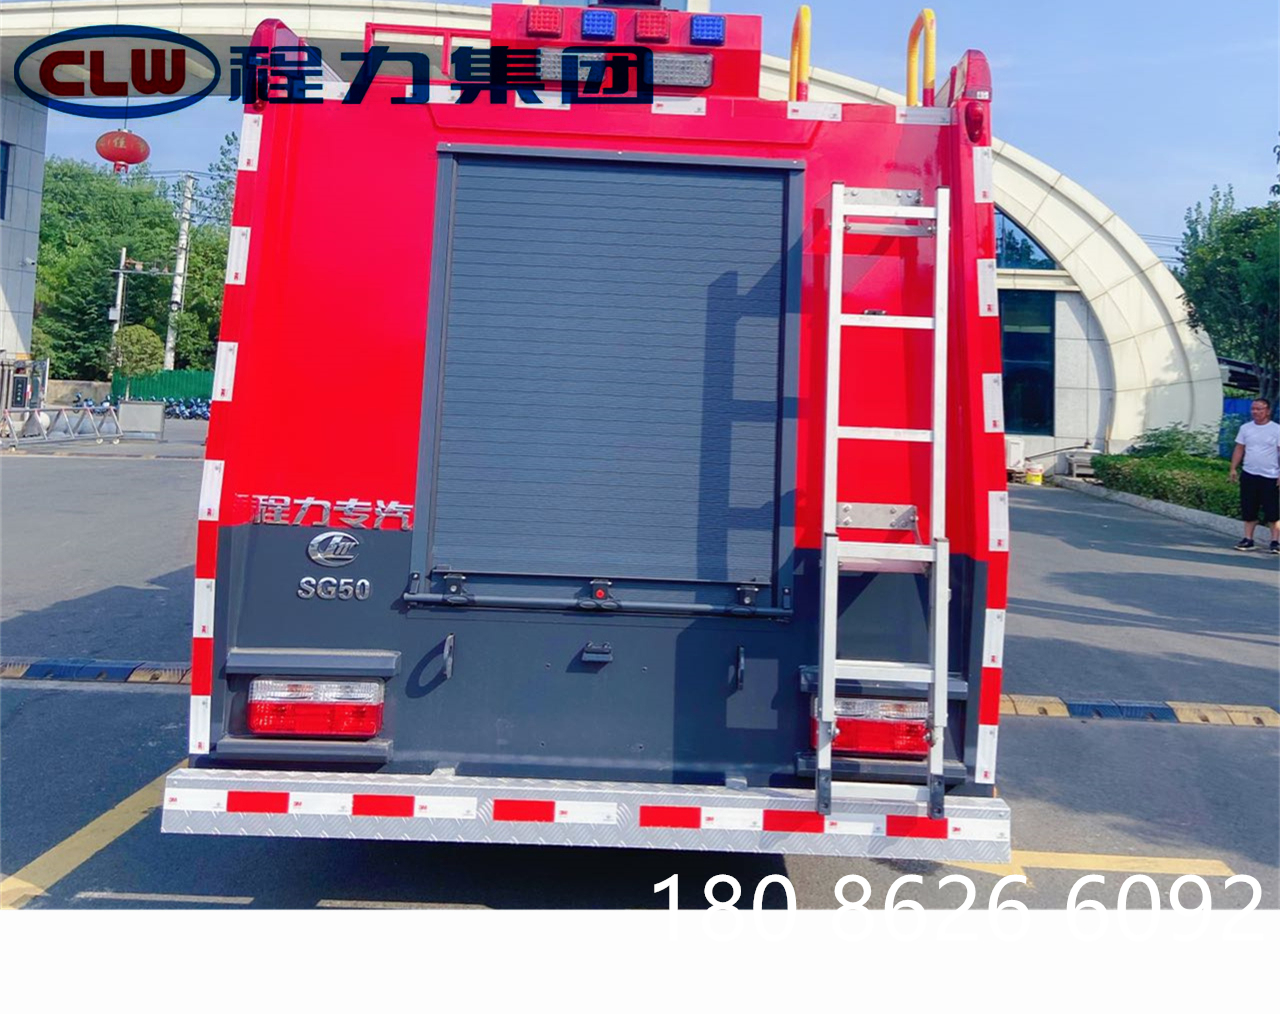 5吨水罐消防车图片